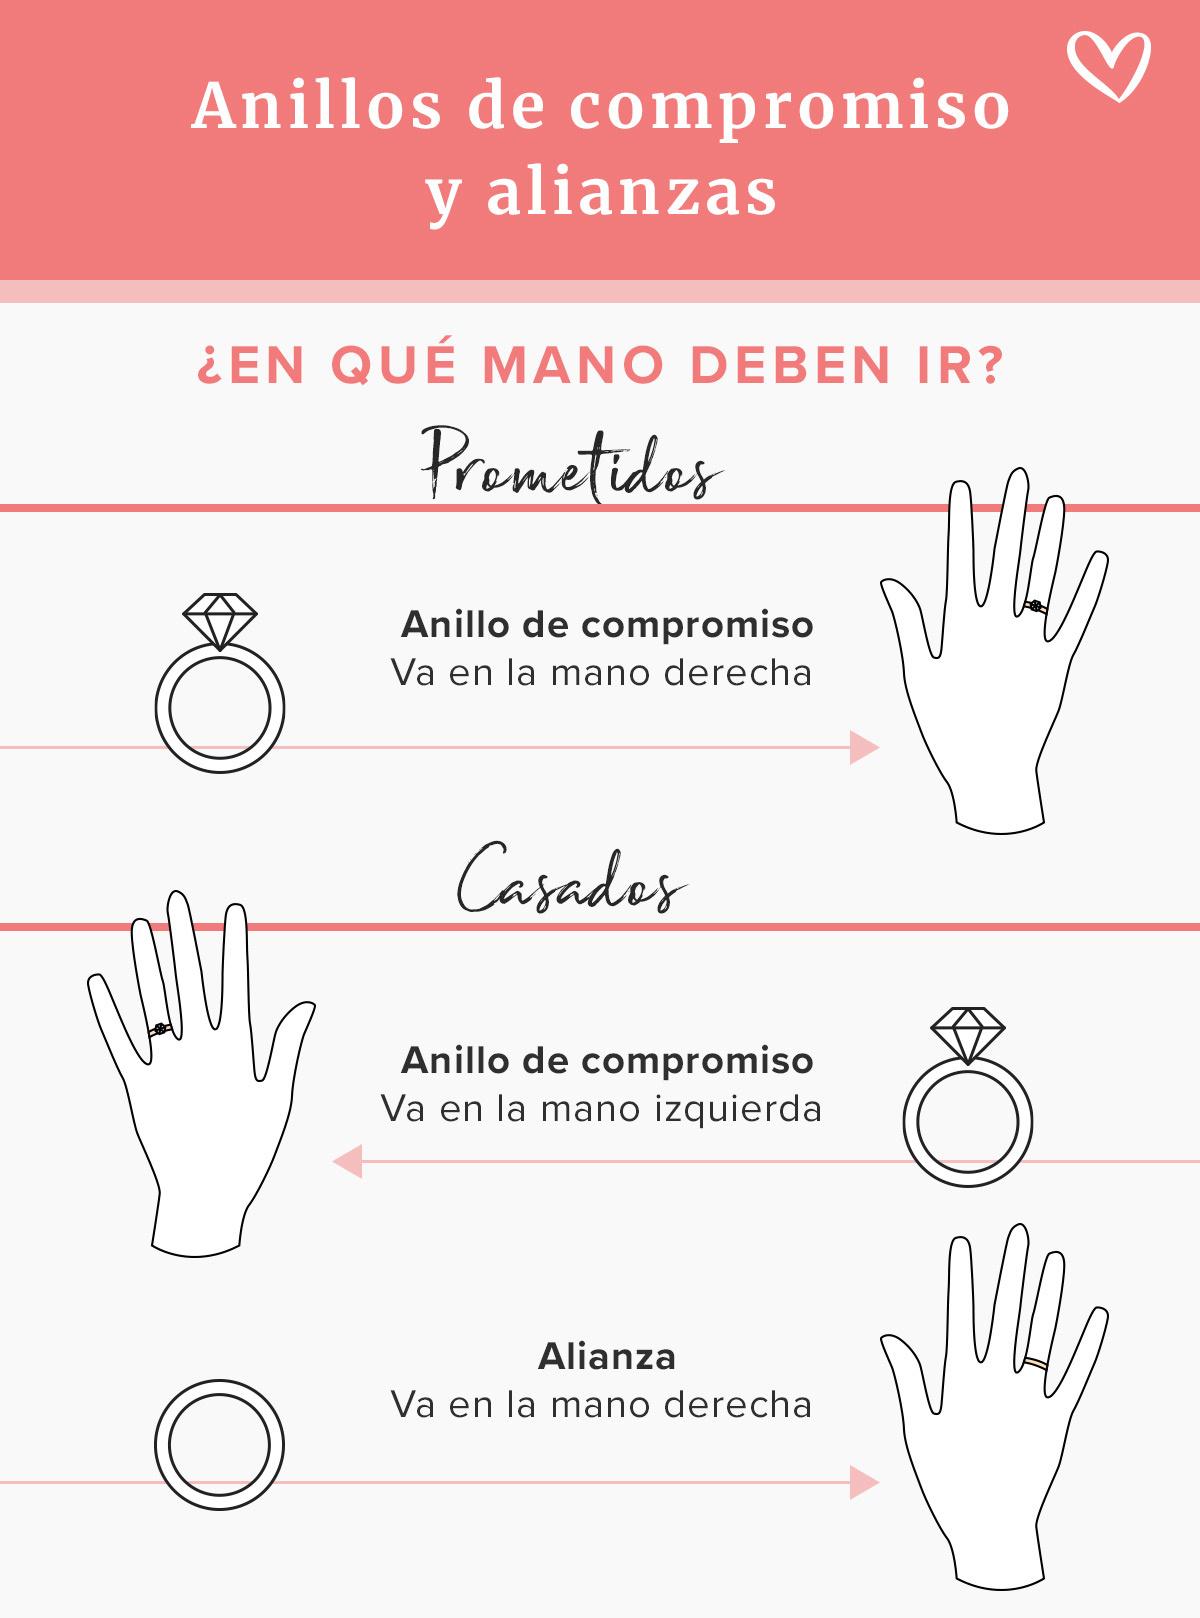 Infografía en la que se explica en qué mano se pone el anillo de casado en España y el de compromiso